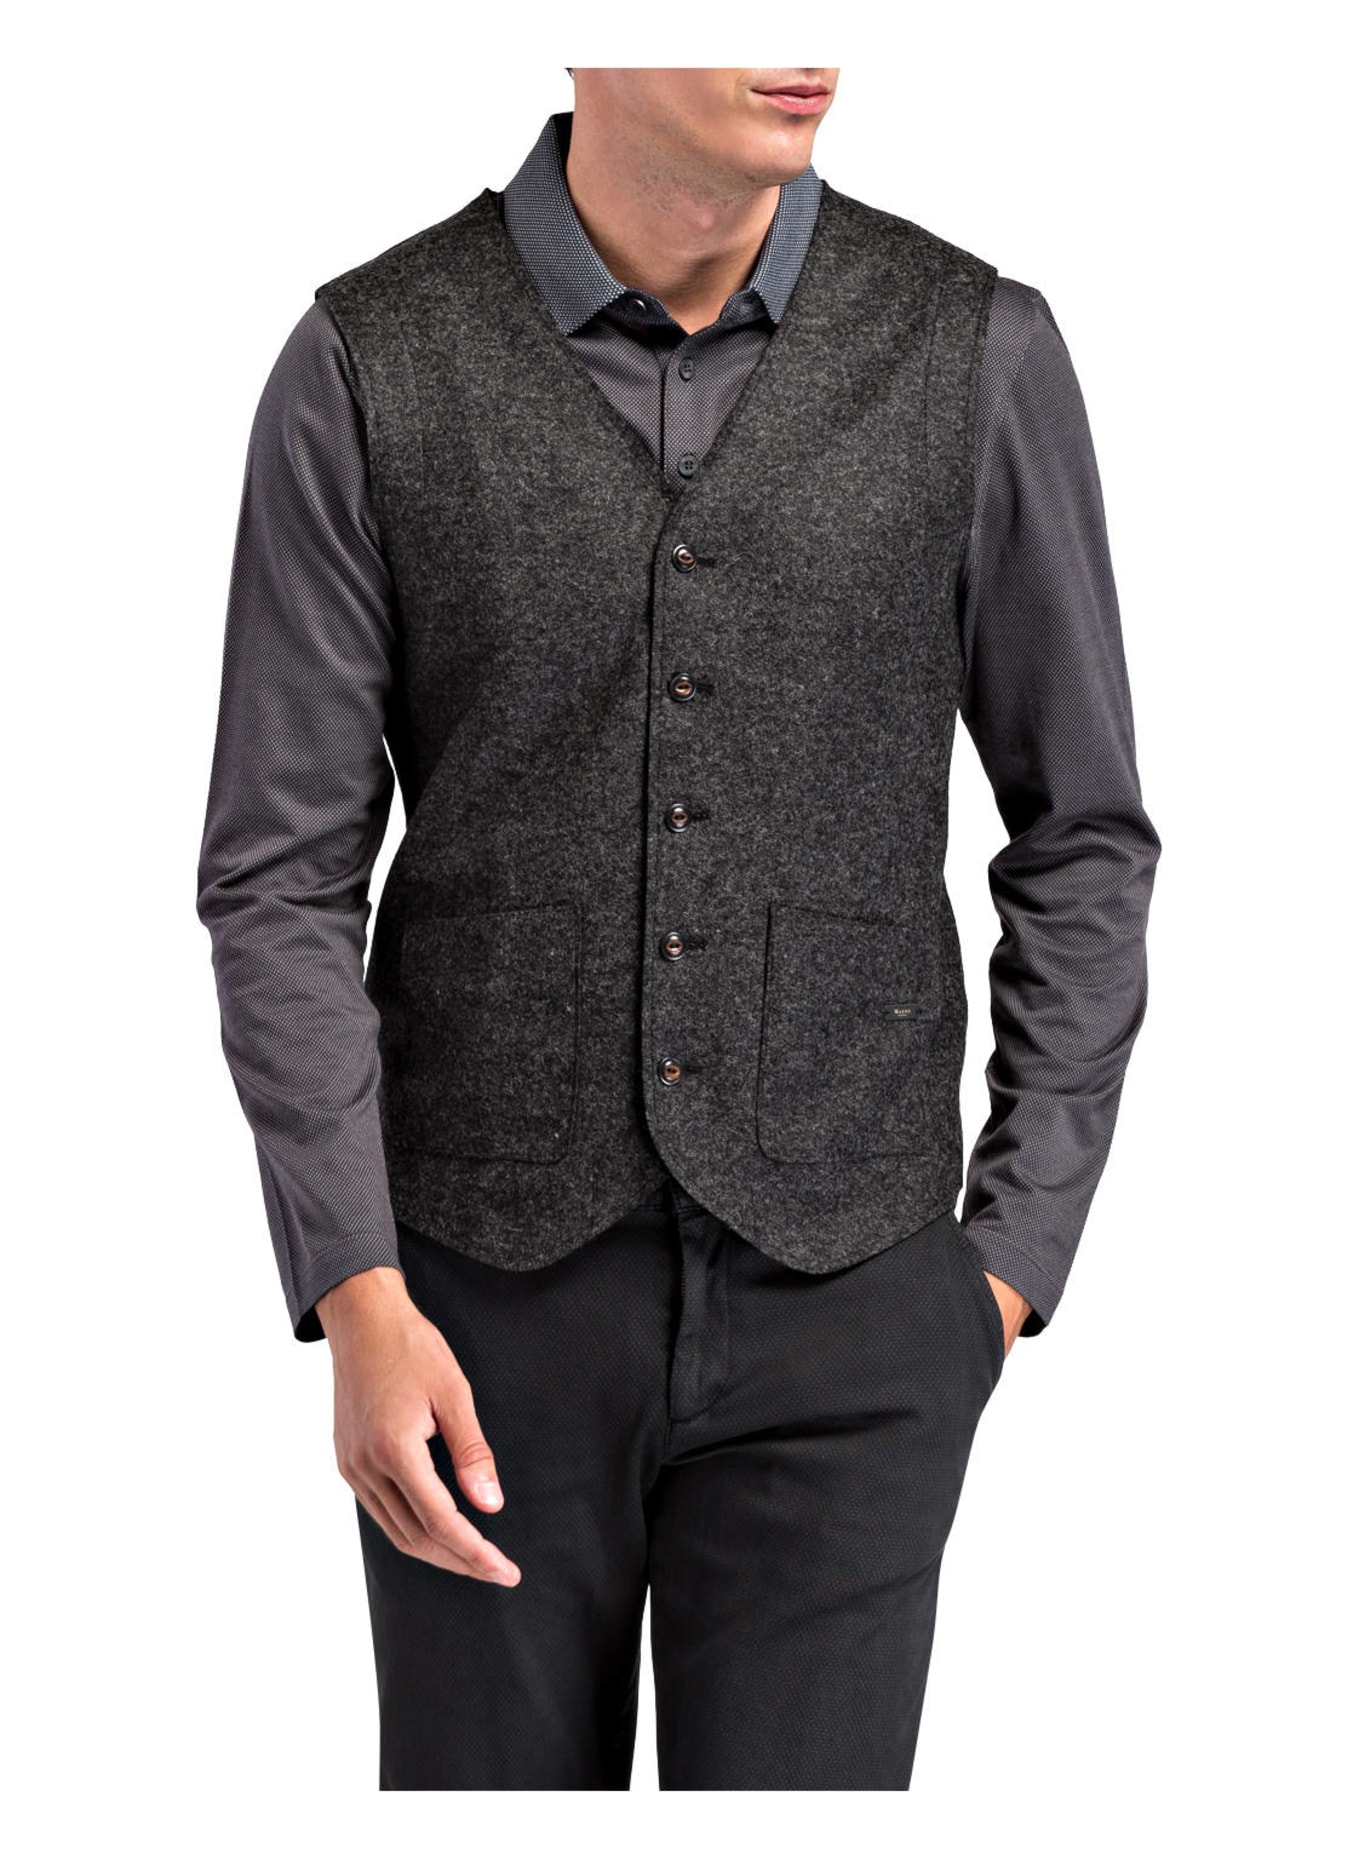 MAERZ MUENCHEN Suit vest, Color: DARK GRAY/ BLACK (Image 2)